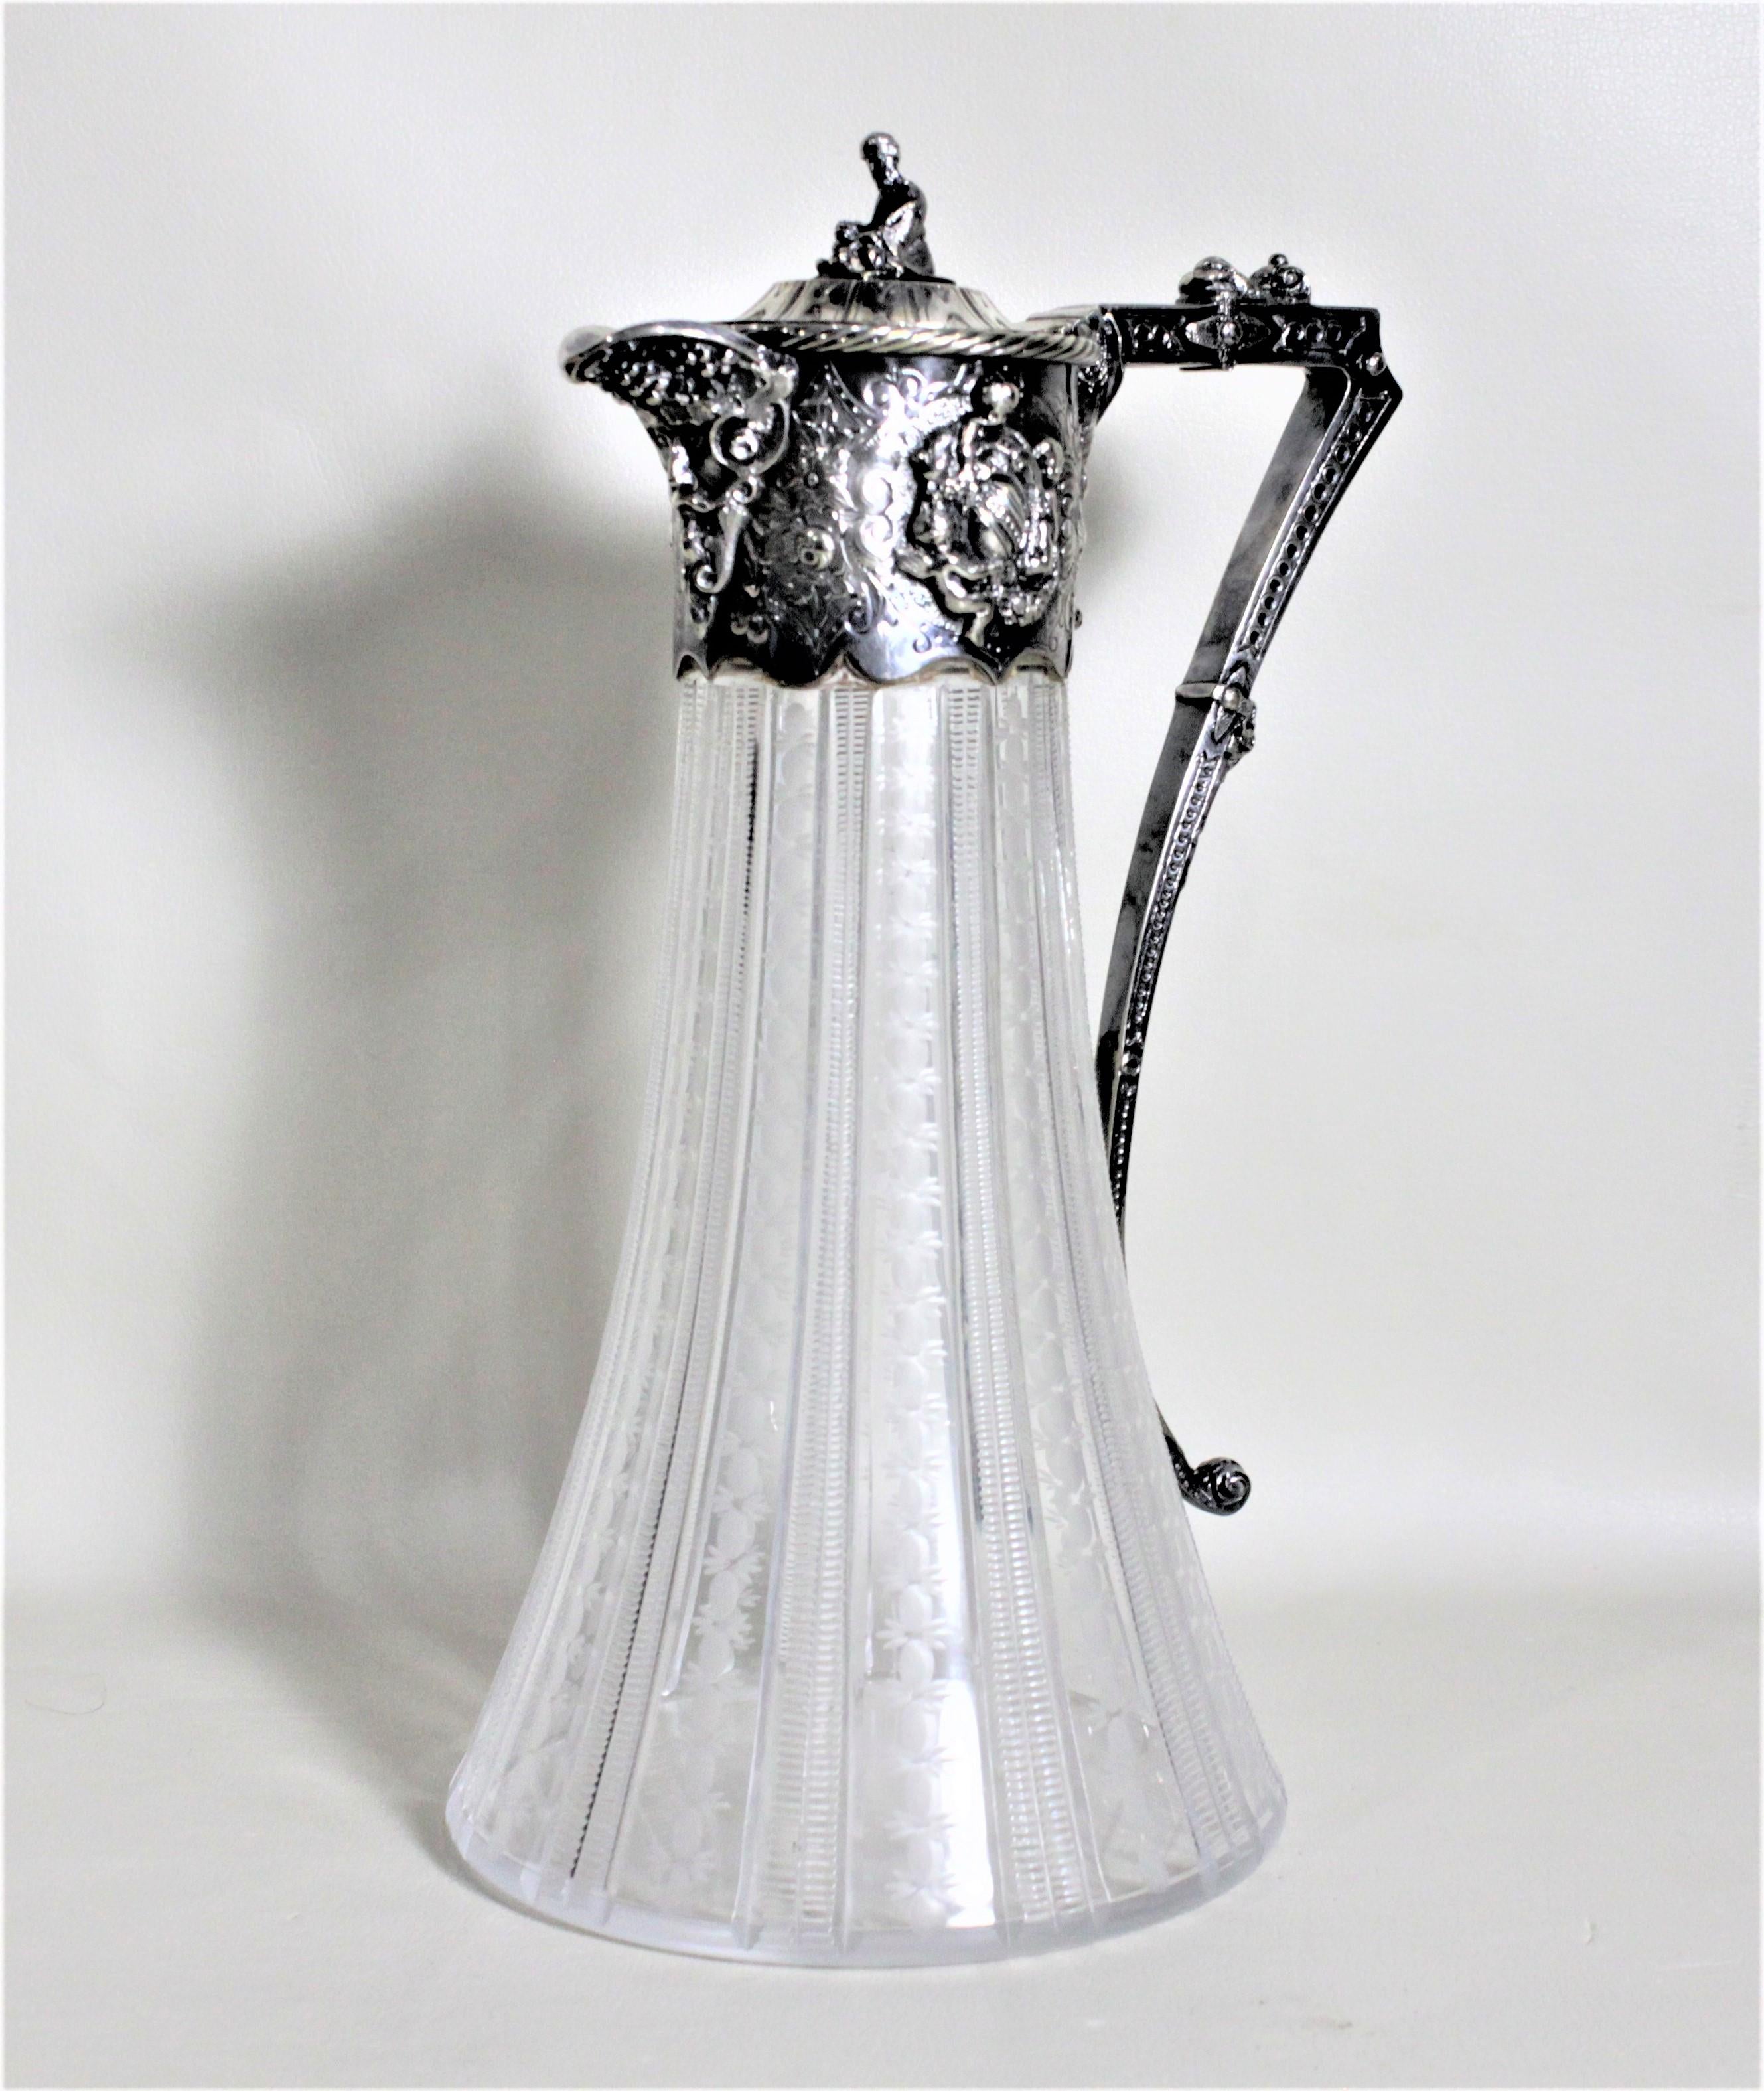 Dieser antike Krug aus Silberblech und geschliffenem Glas wurde höchstwahrscheinlich um 1900 in England im viktorianischen Stil hergestellt. Der Krug ist mit einer sitzenden Figur auf der Oberseite des Deckels und einem kunstvollen, erhabenen